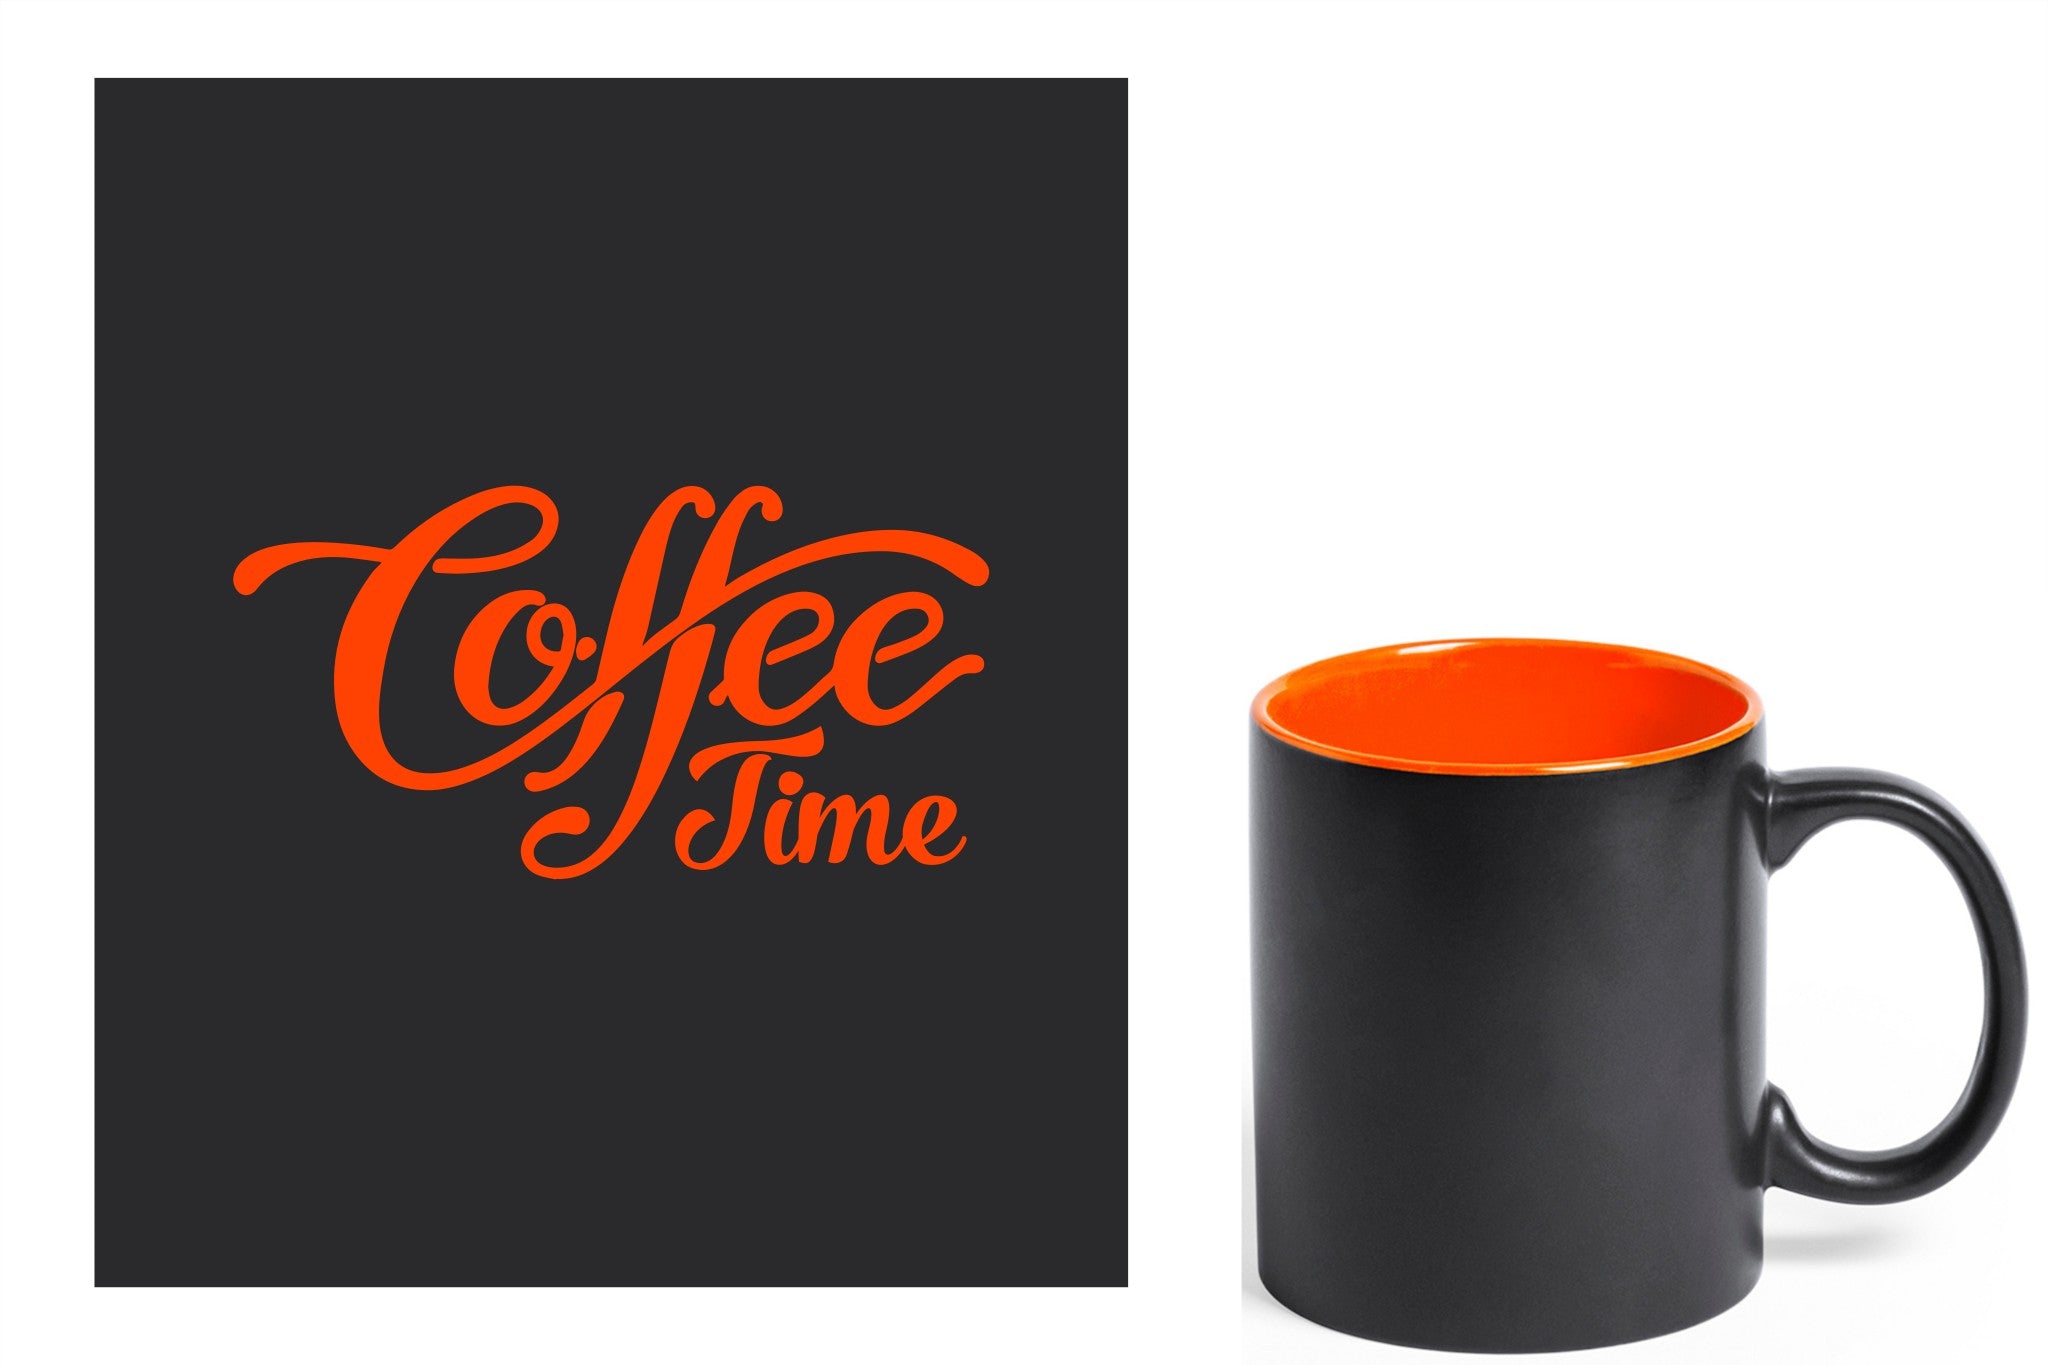 zwarte keramische mok met oranje gravure  'Coffee time'.